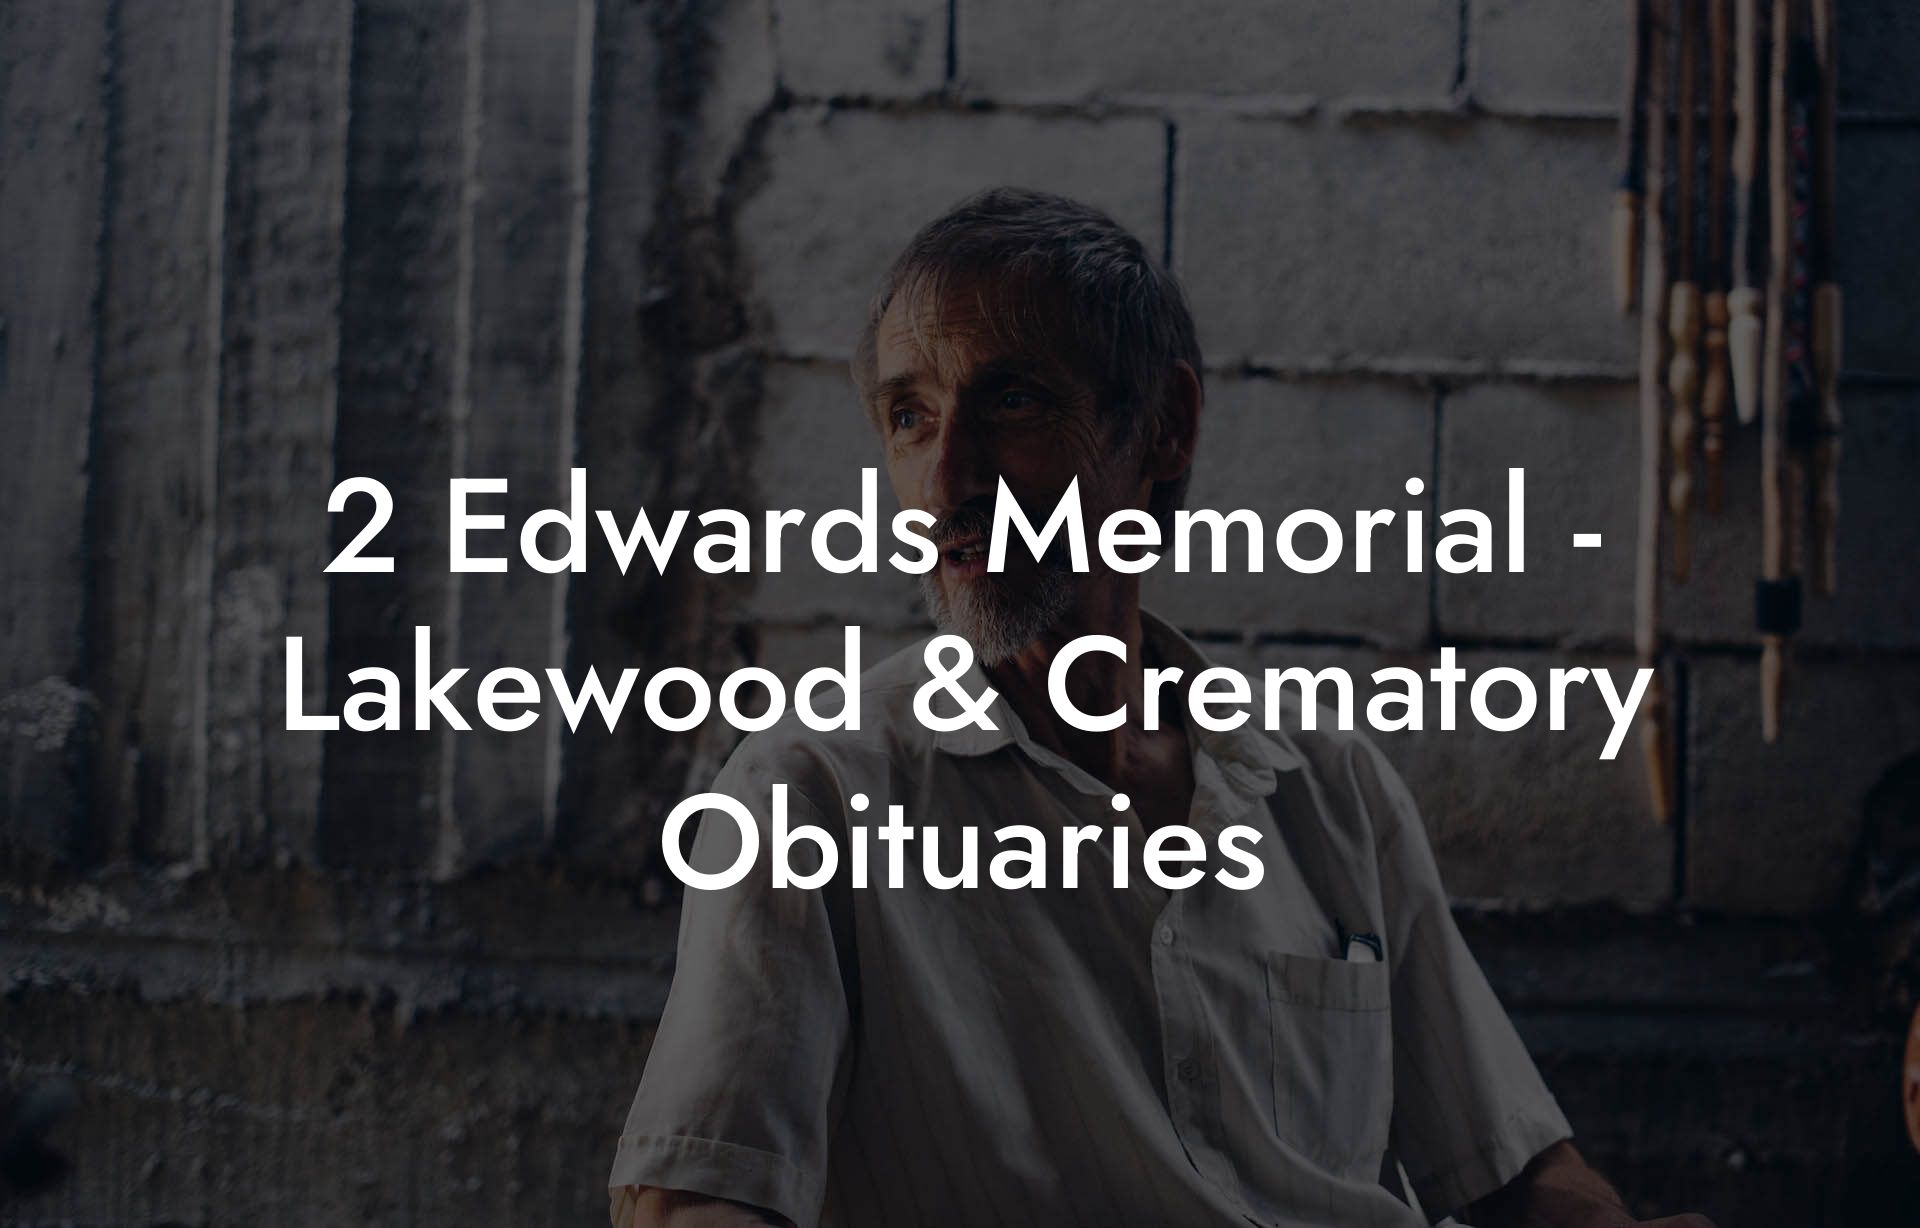 2 Edwards Memorial - Lakewood & Crematory Obituaries